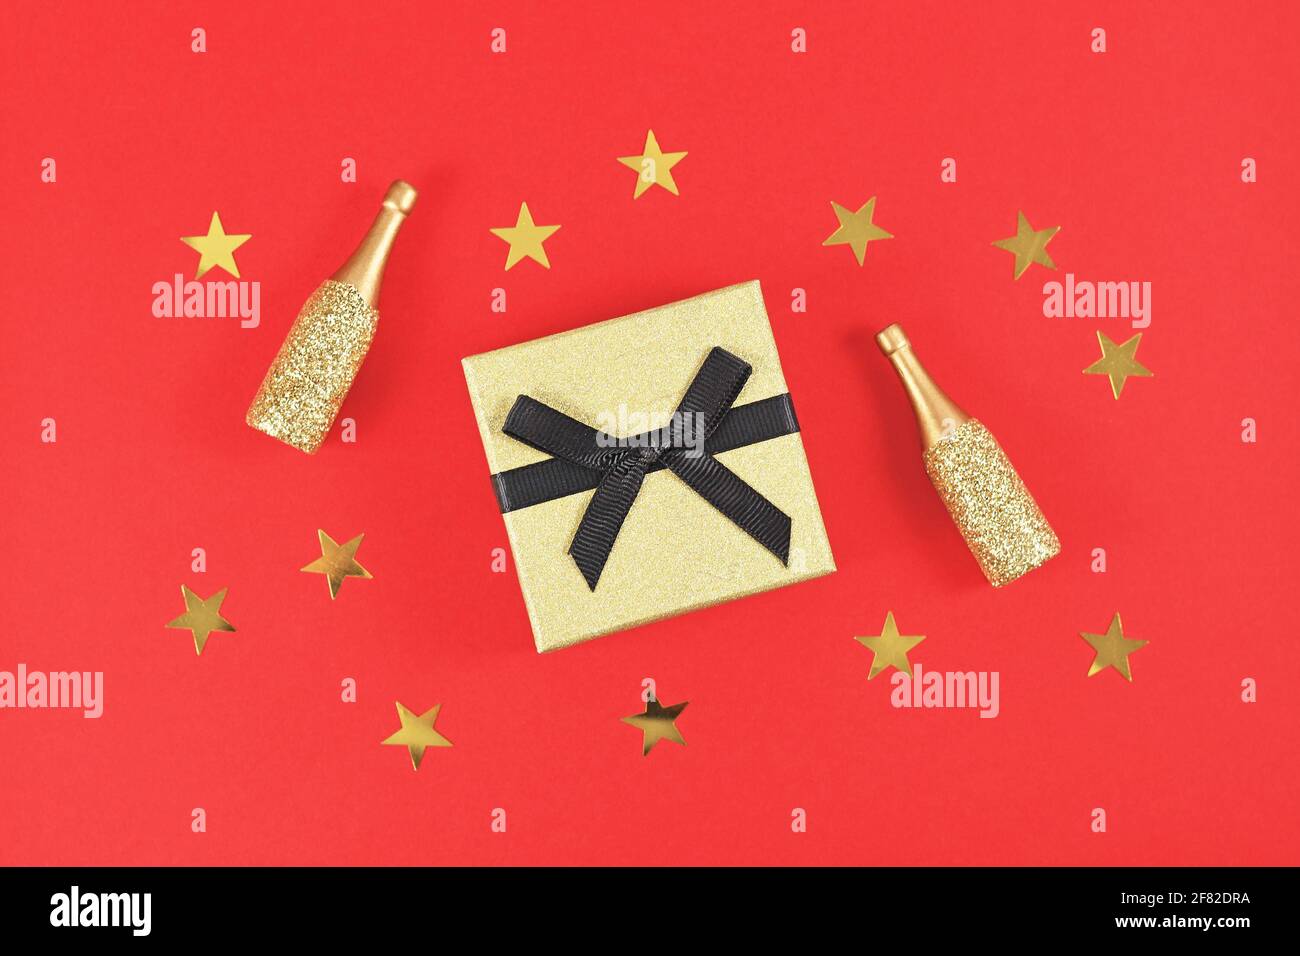 Goldene Geschenkbox mit schwarzer Schleife, kleinen Champagnerflaschen und Sternen auf rotem Hintergrund Stockfoto